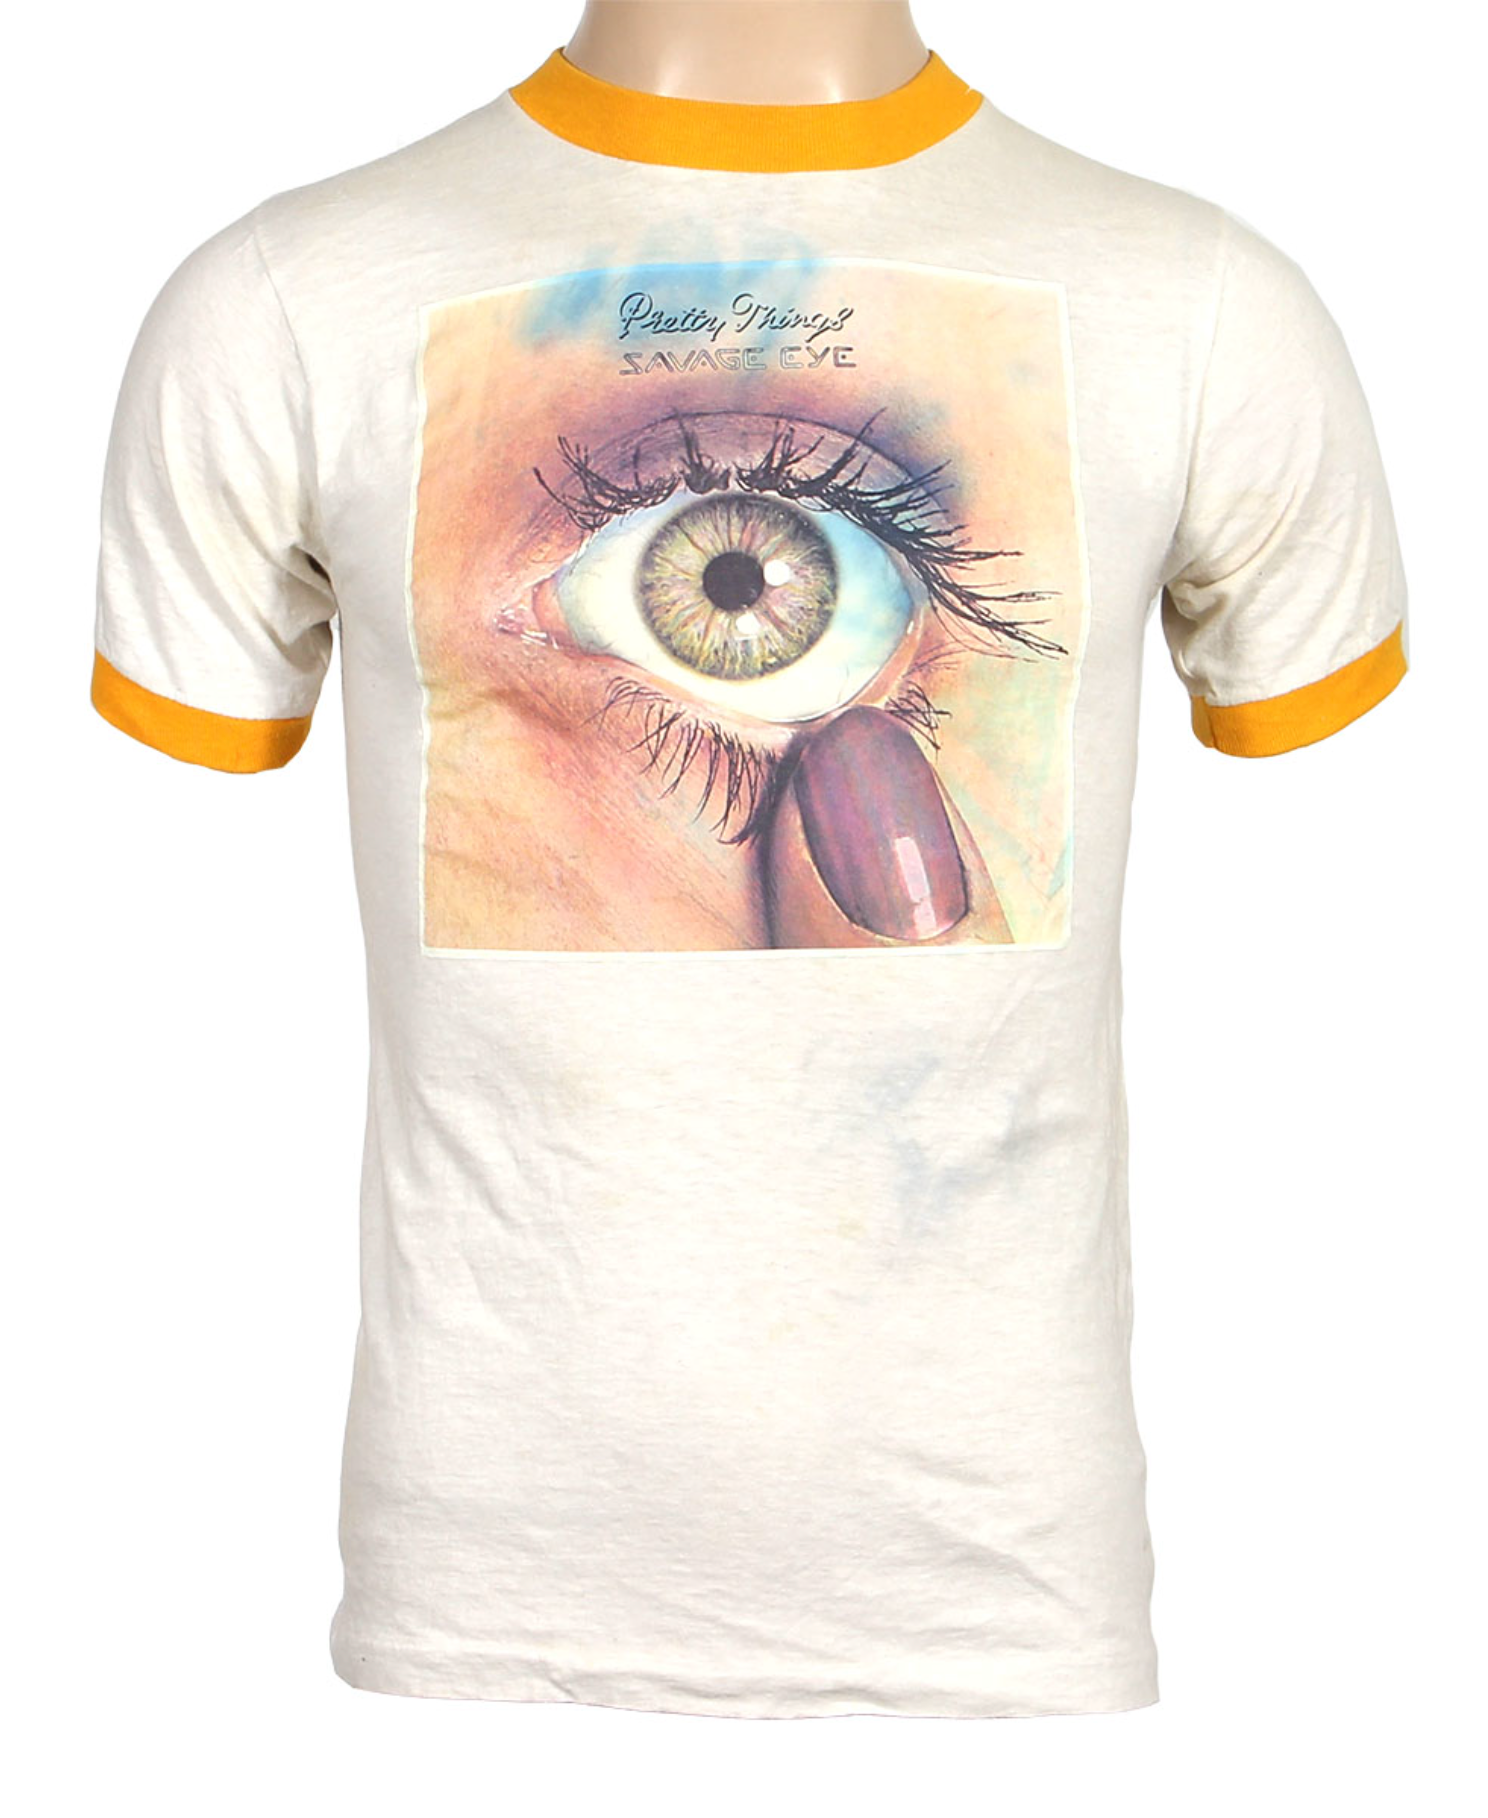 Pretty Things "Savage Eye" Album T-Shirt